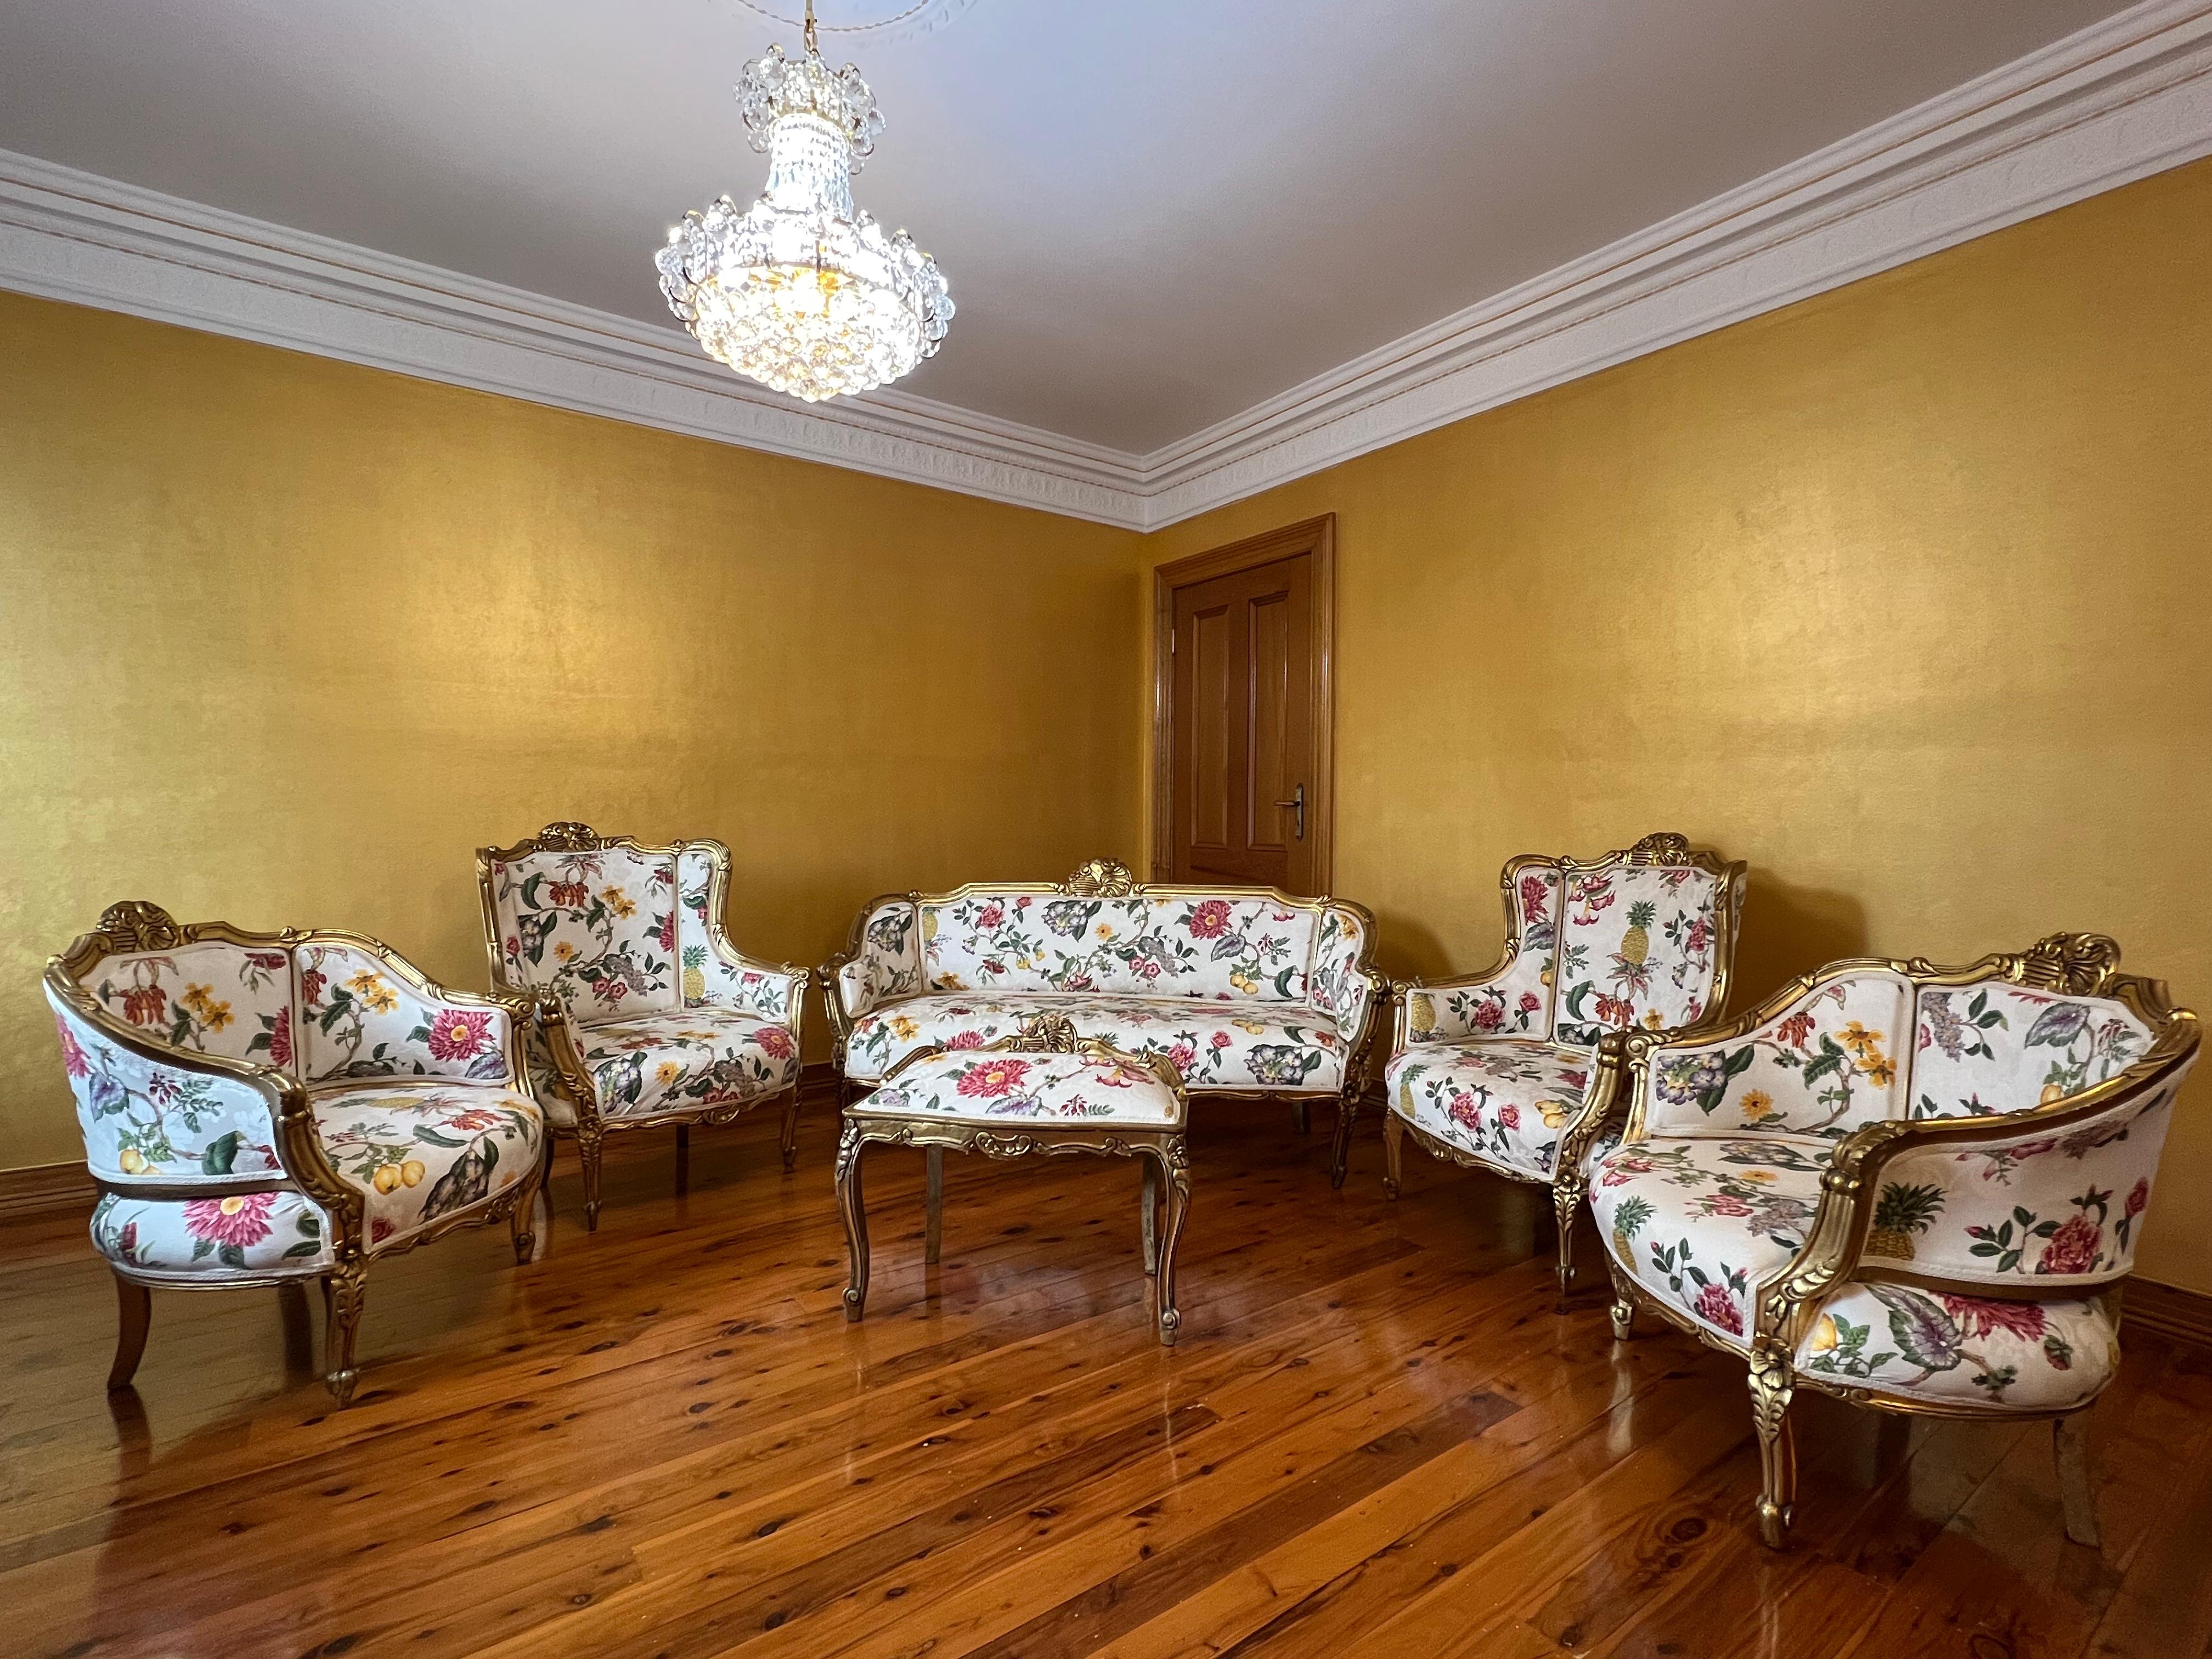 Wunderschönes, vergoldetes, sechsteiliges Sofa aus dem 19. Jahrhundert mit floralen Schnitzereien und vielen Details, gepolstert mit einem Seidendamaststoff mit Blumen und Ananas.

Sechsteilige Suite kommt mit

Chaise Dreisitzer

Zwei